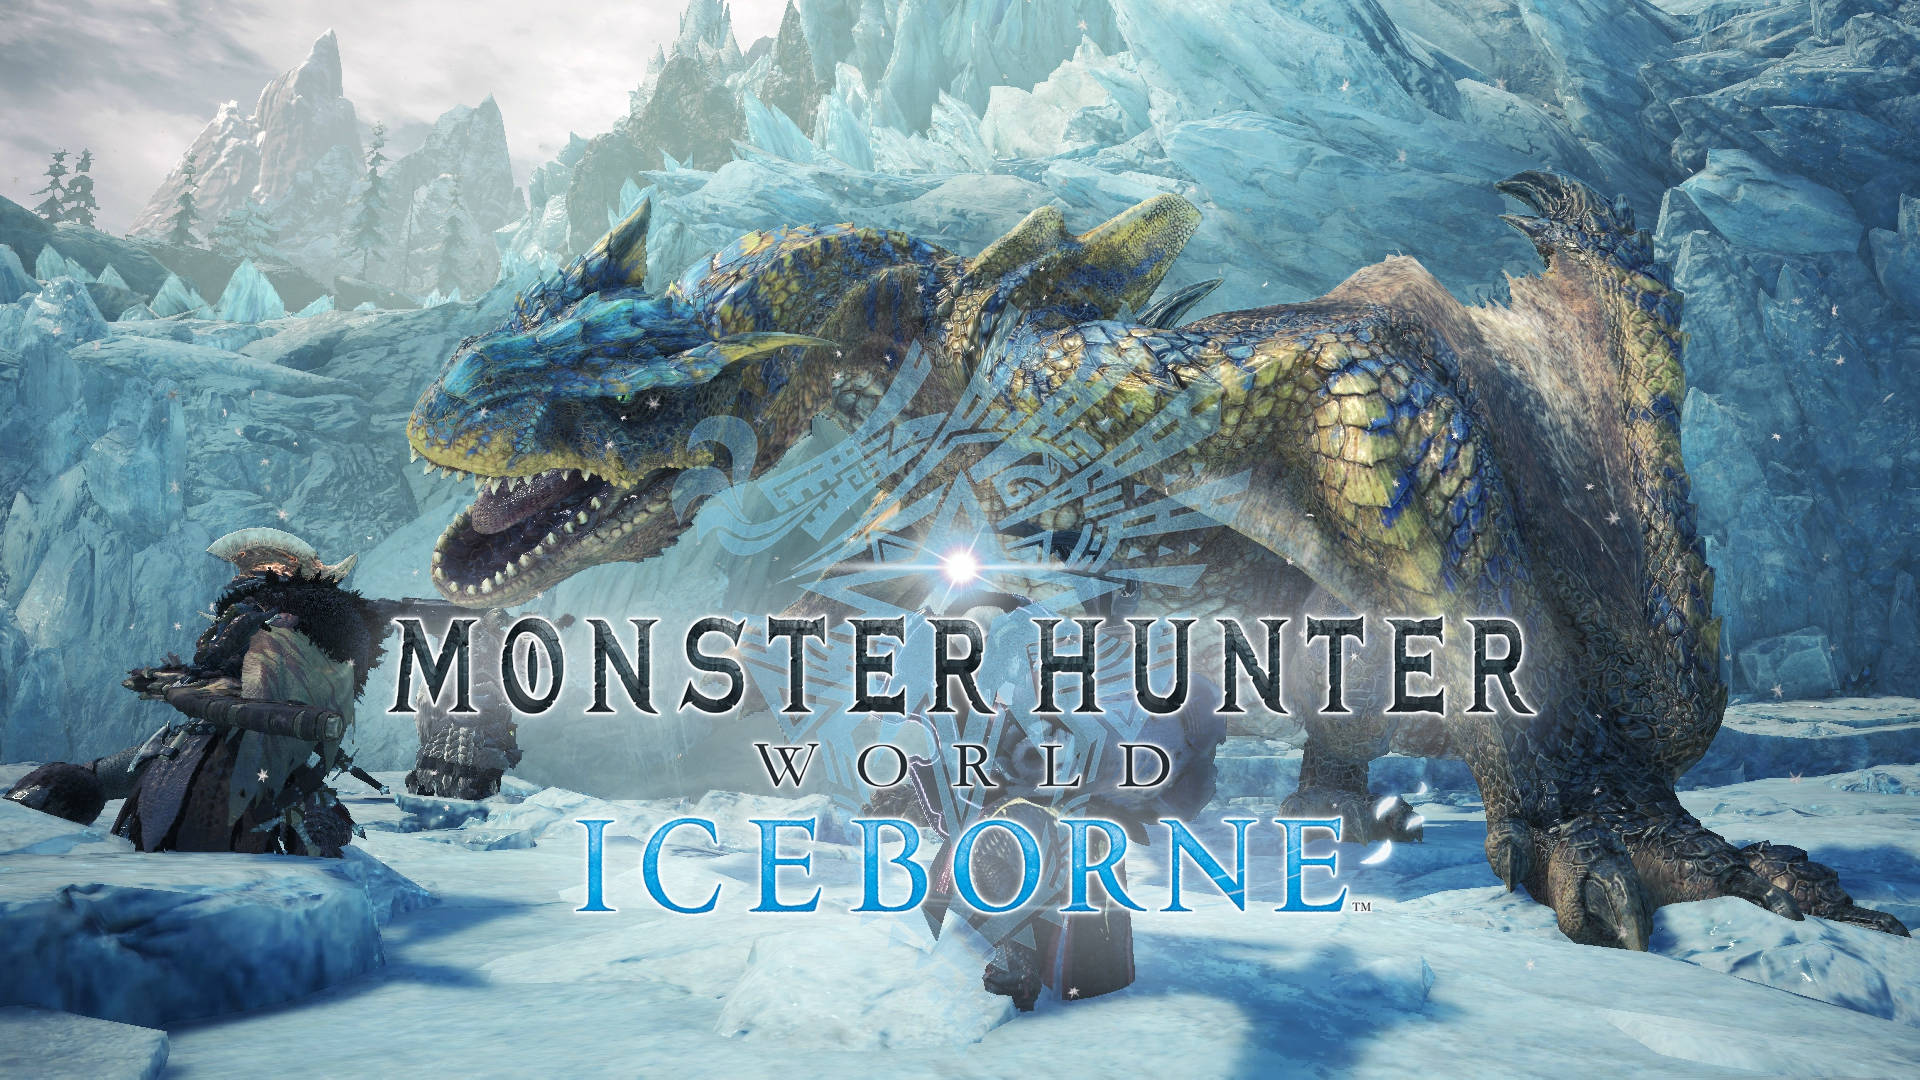 Monster Hunter World Iceborne Poster With Tigrex Wallpaper